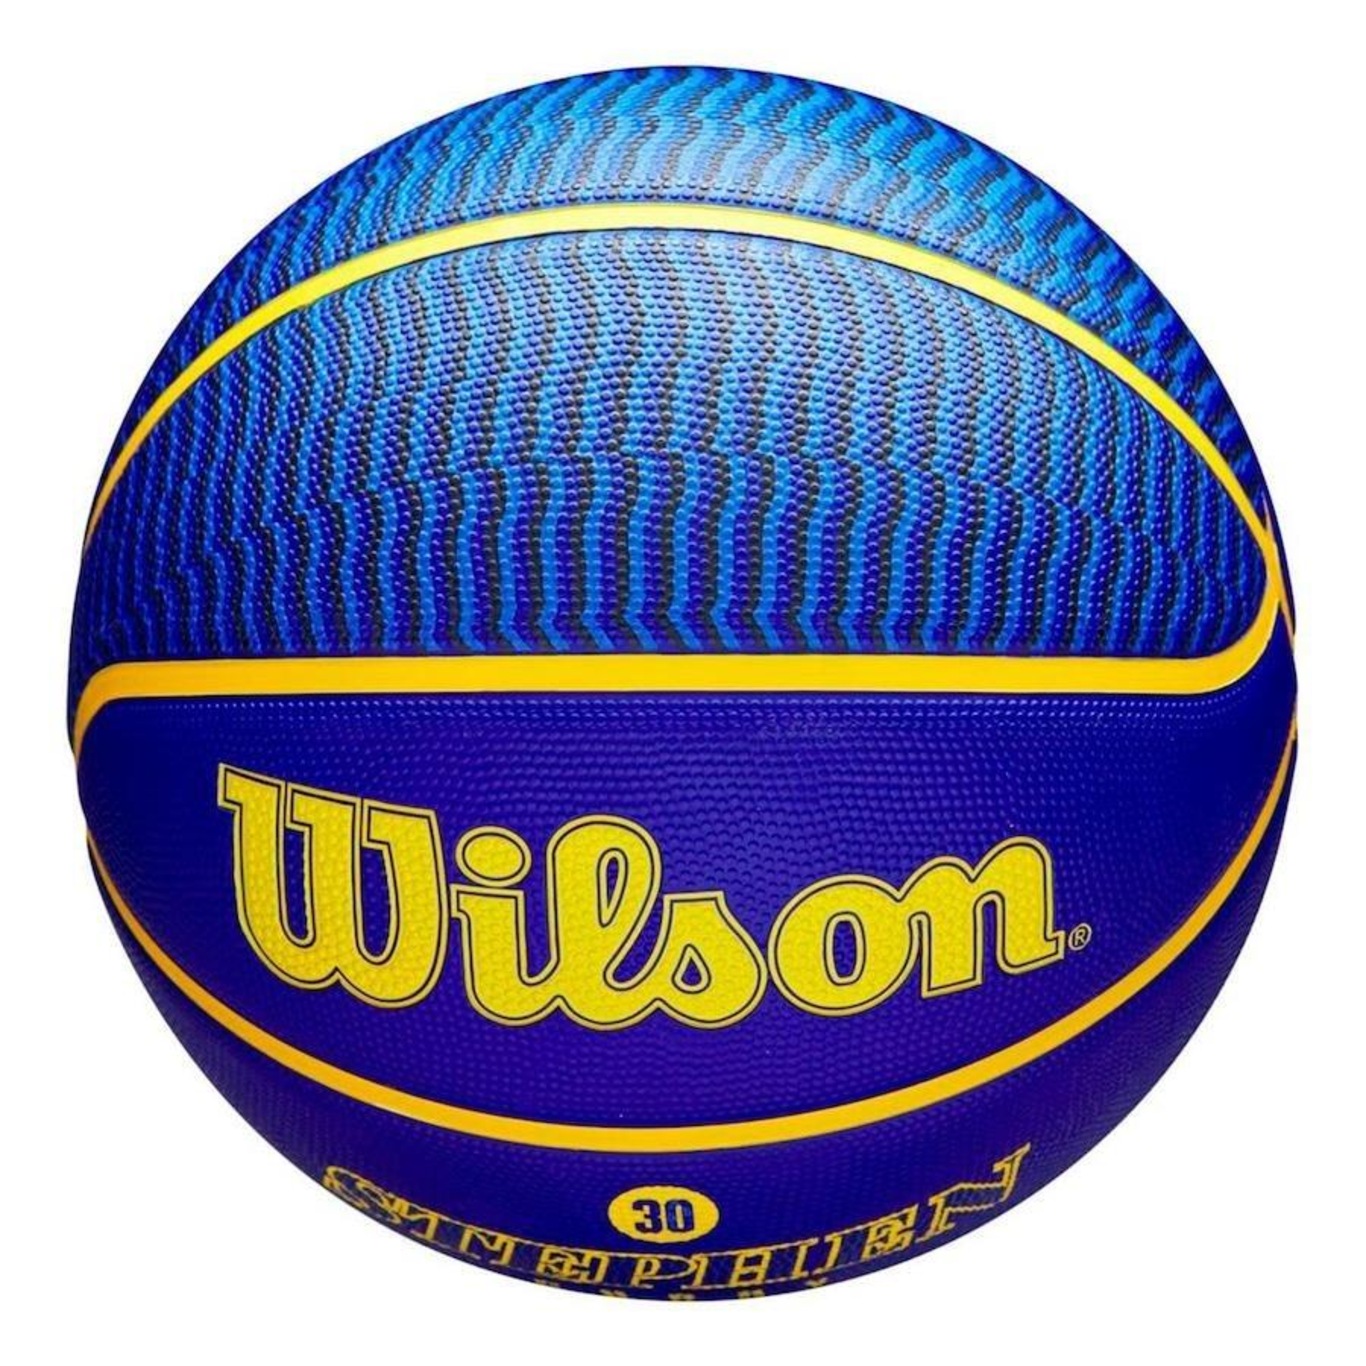 Bola de Basquete Wilson NBA Player Icon #7 Outdoor